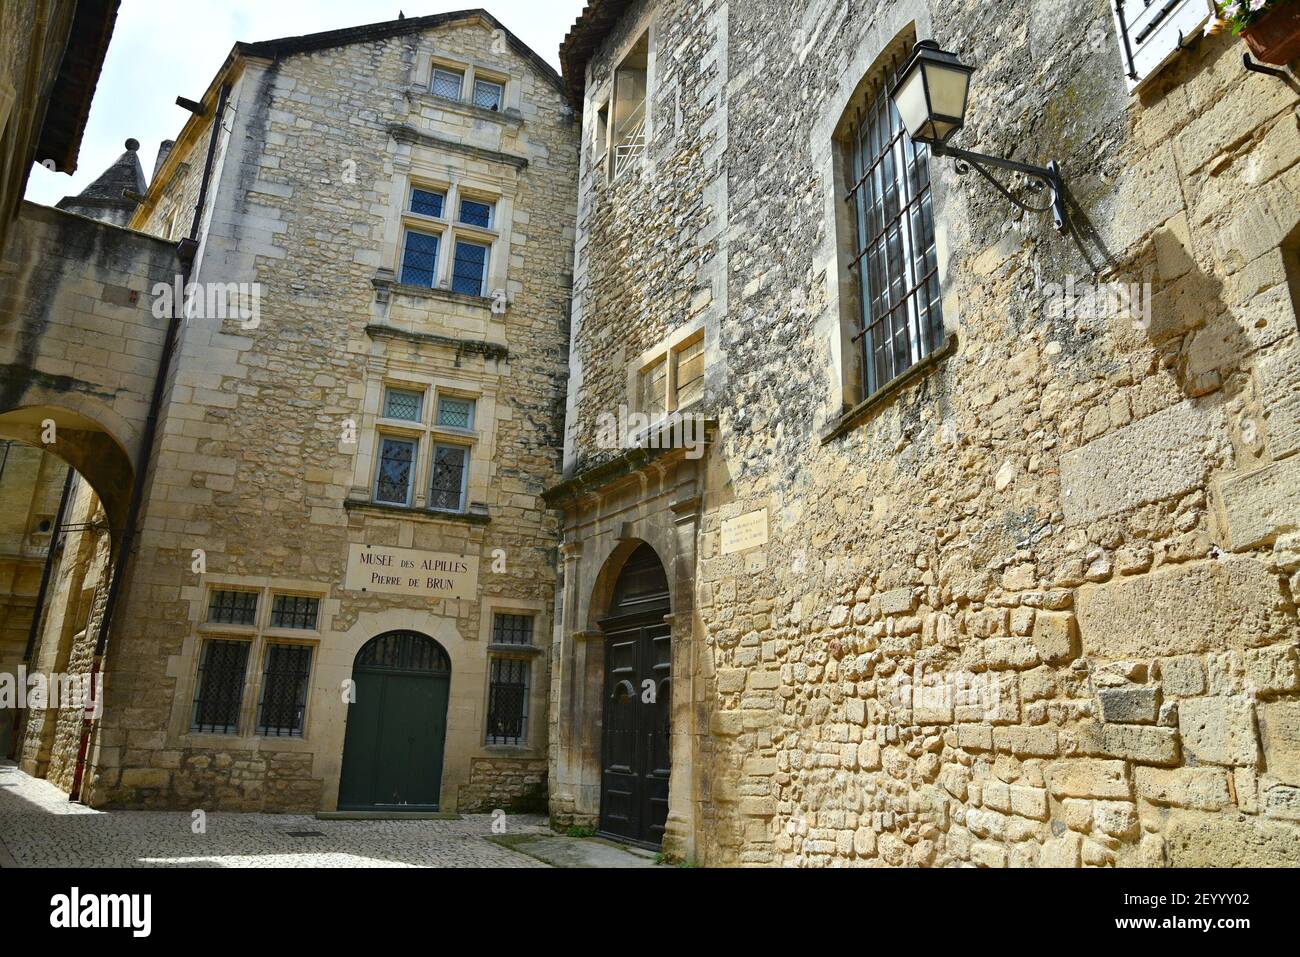 Vue extérieure du musée des Alpilles de style Renaissance, monument historique de Saint-Rémy-de-Provence, Bouches-du-Rhône France. Banque D'Images